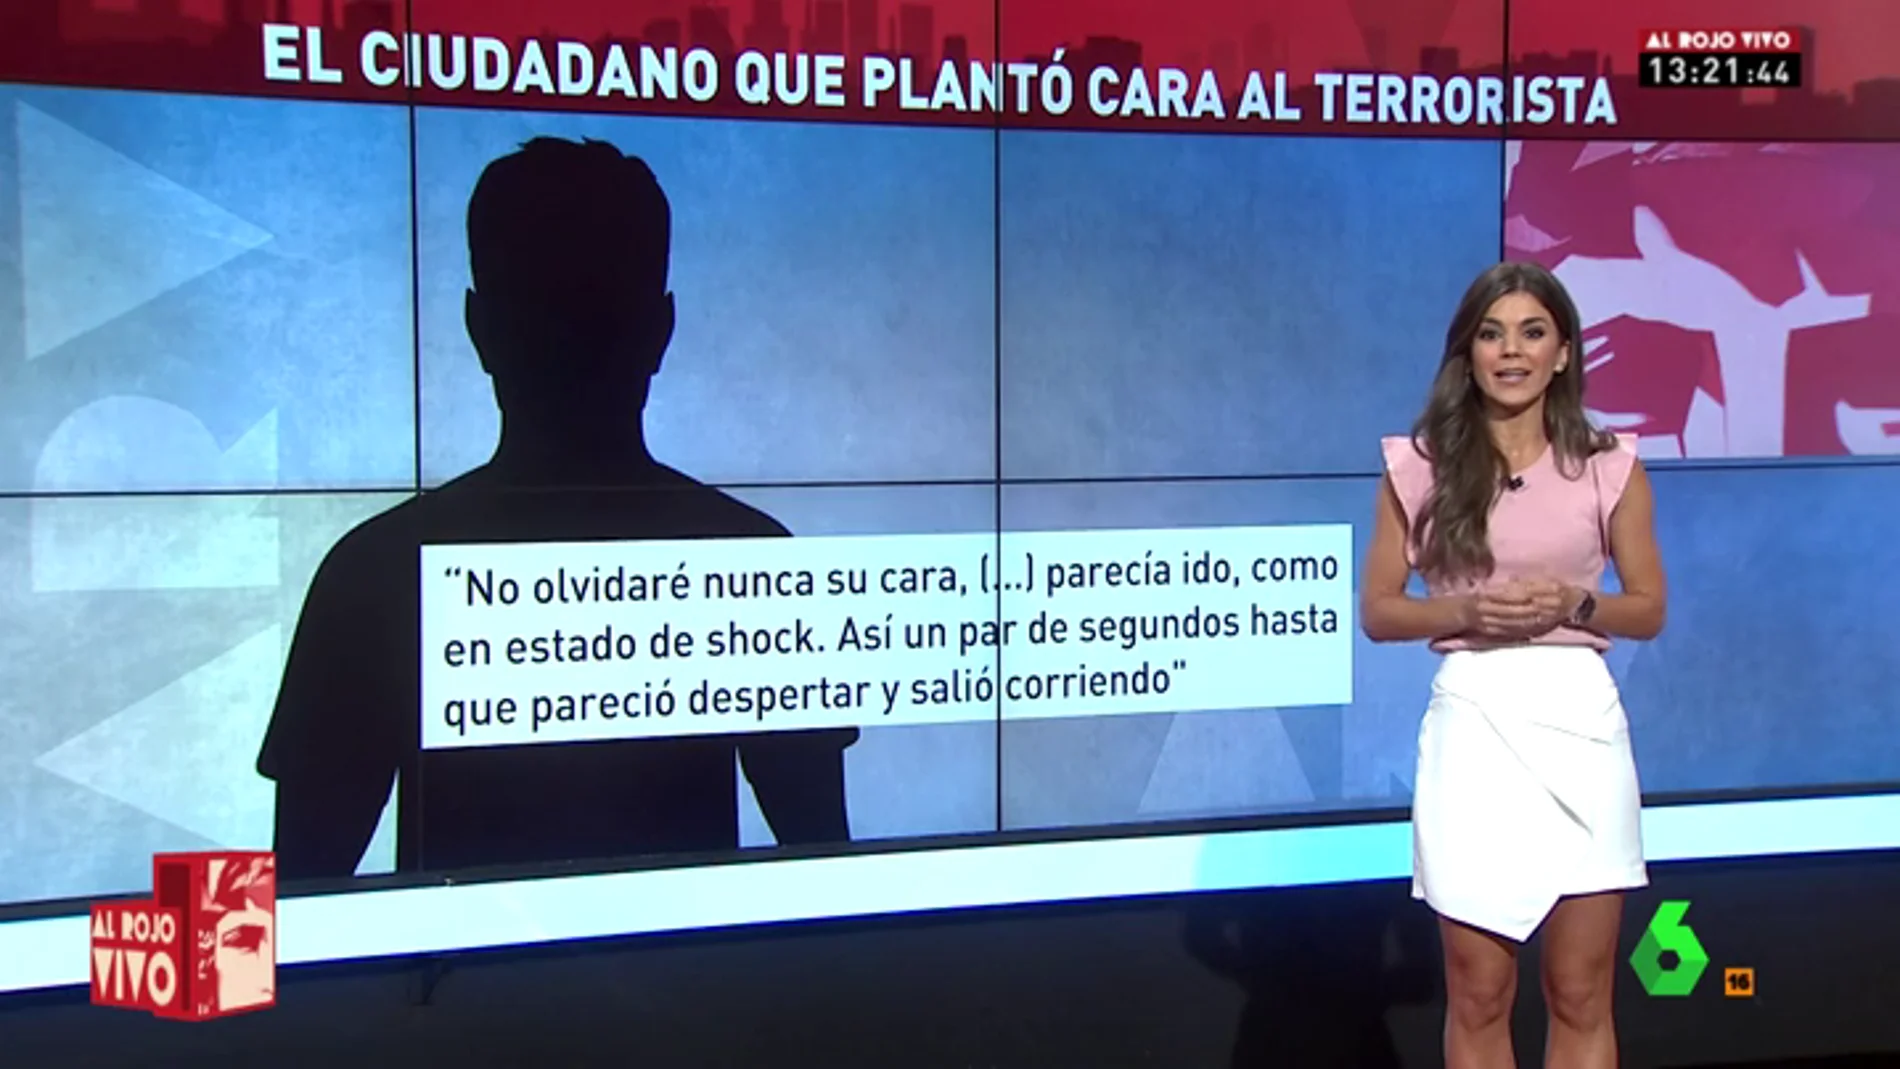 El ciudadano que plantó cara al terrorista de Barcelona